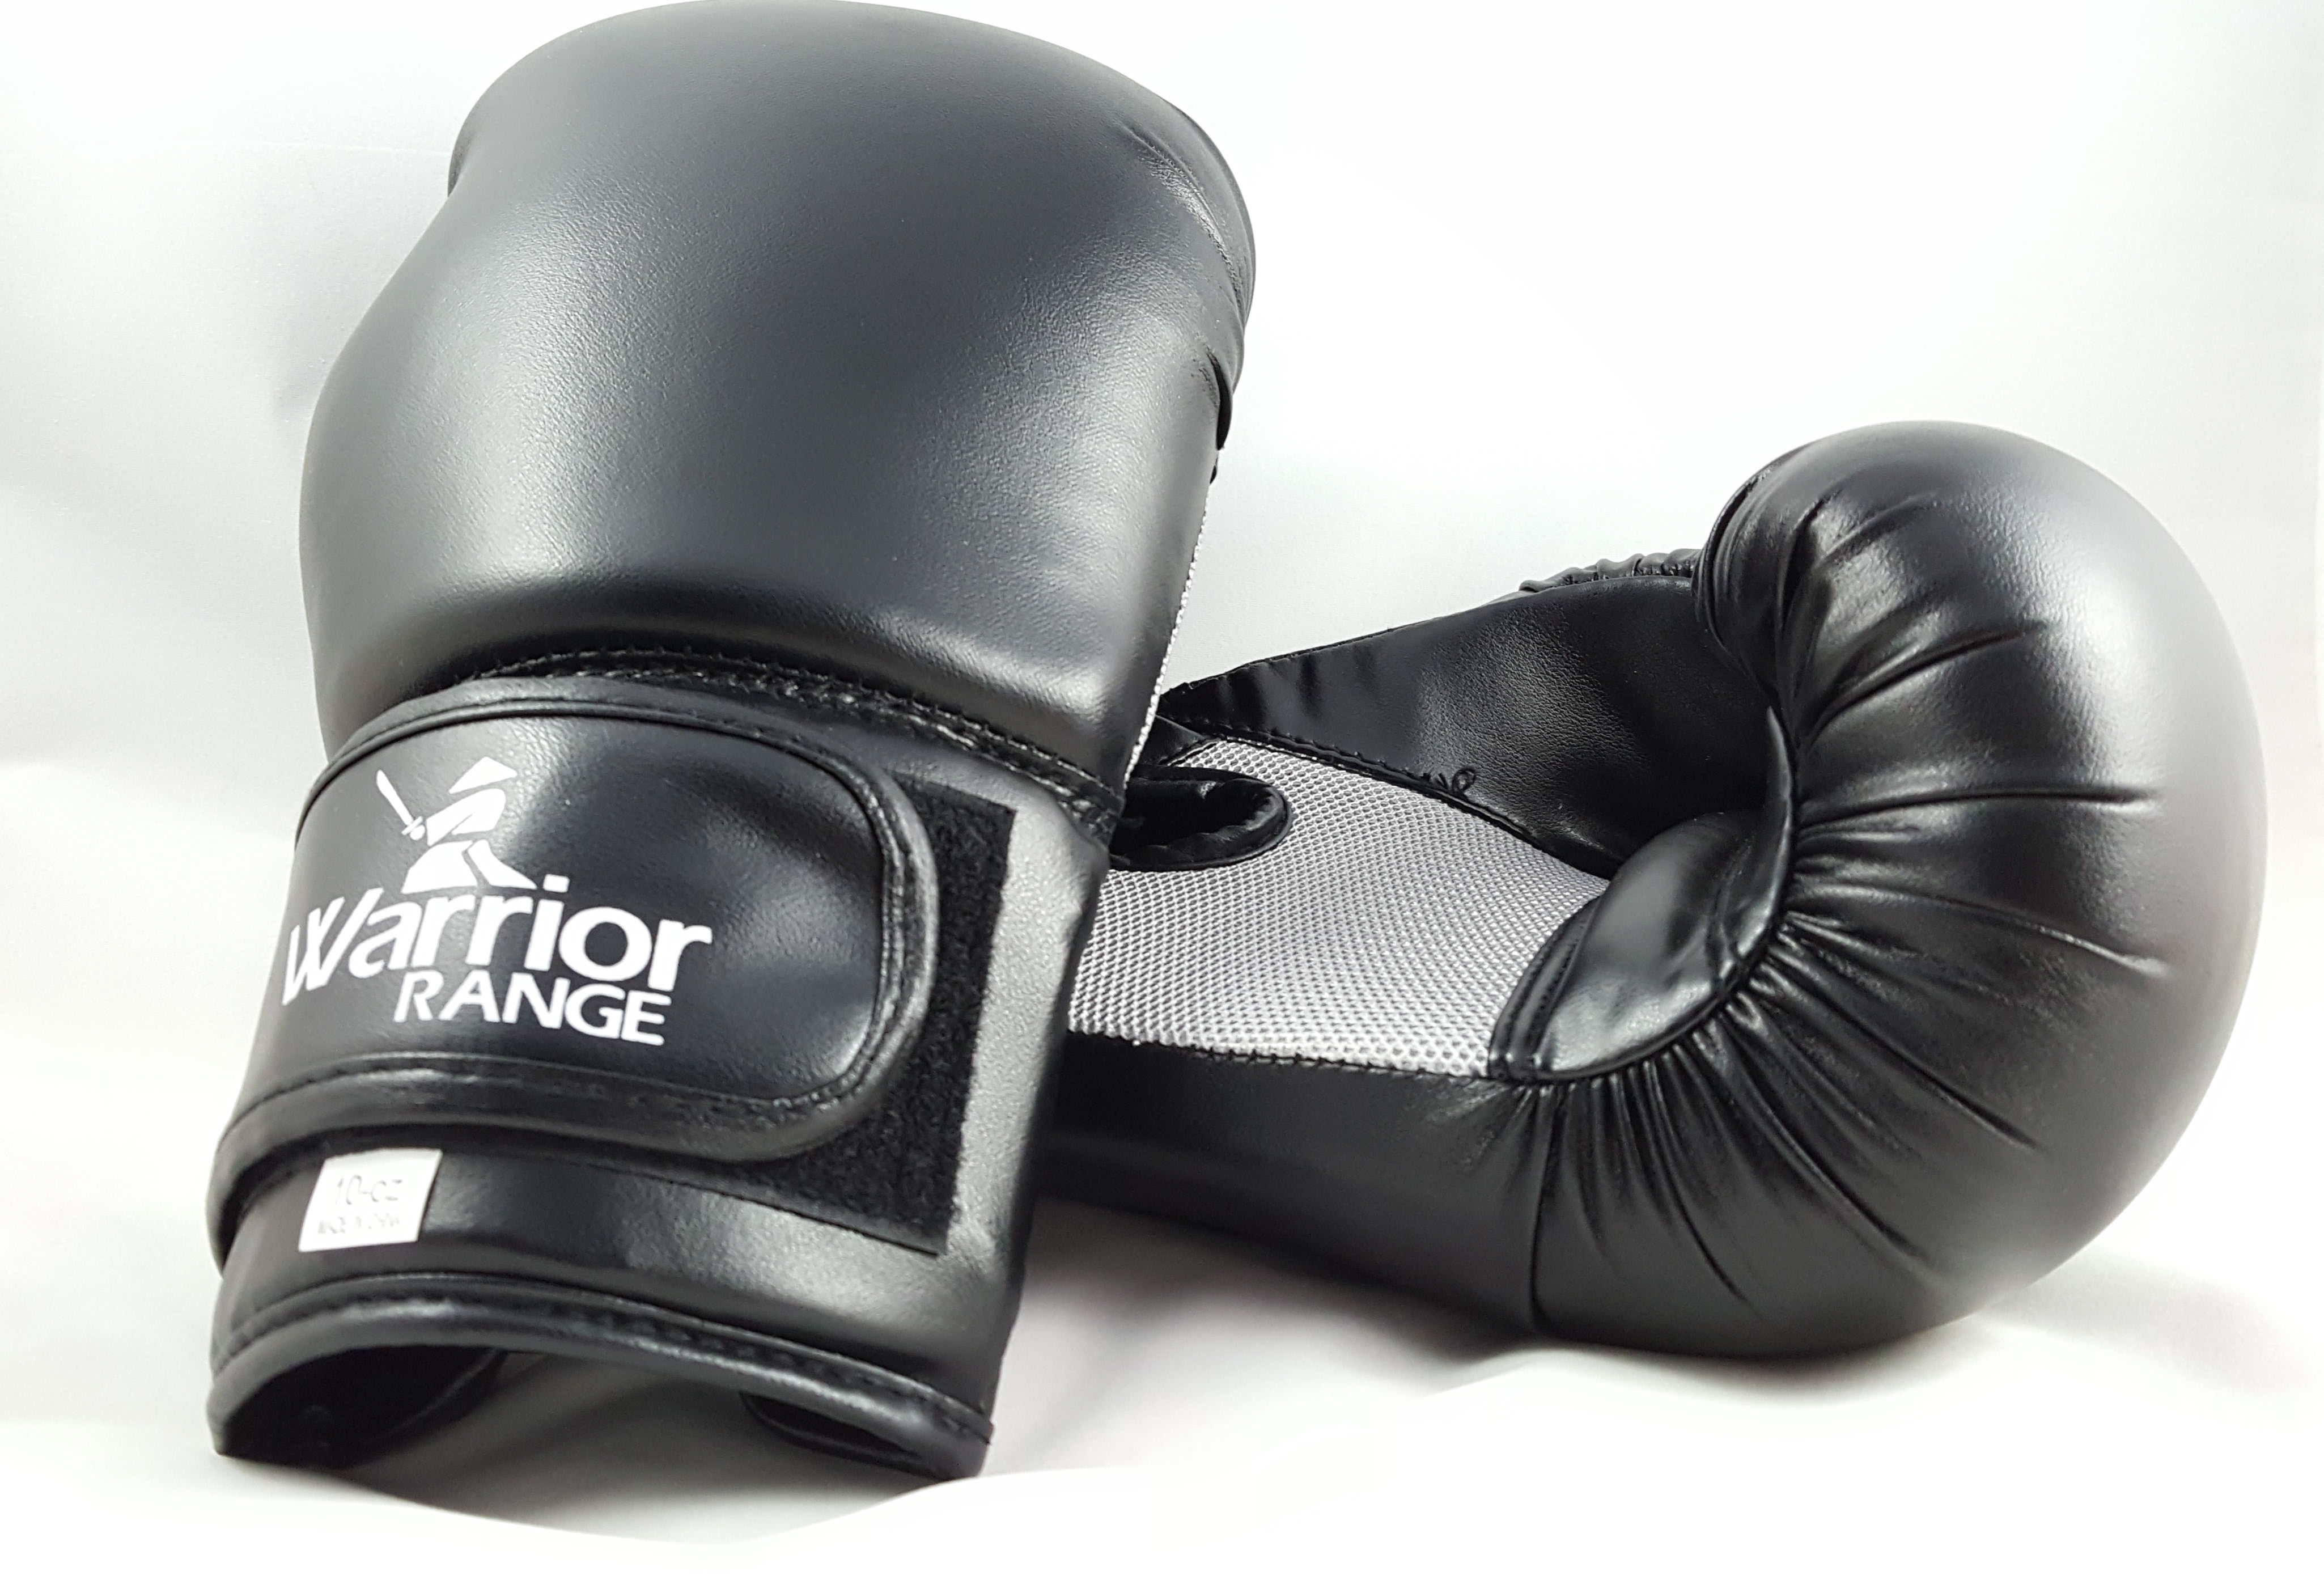 Warrior Range Boxing Gloves